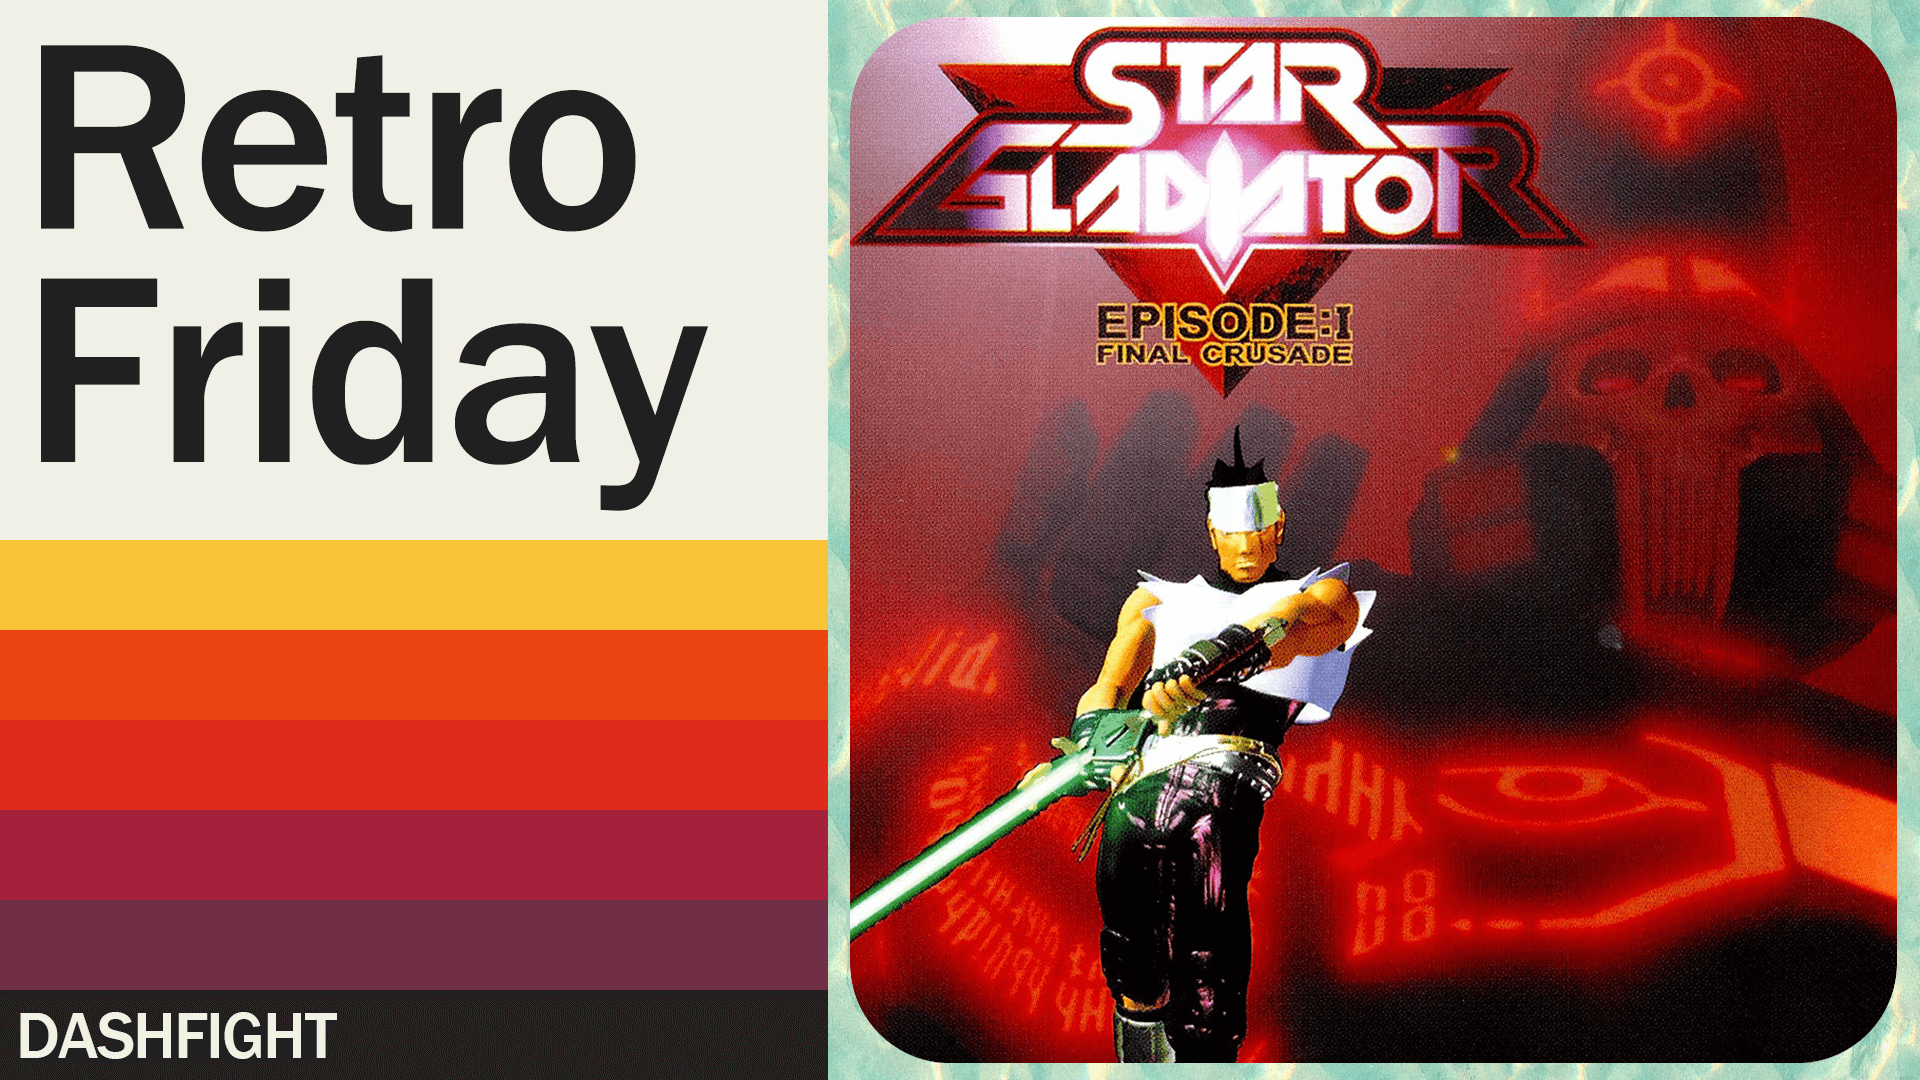 Retro Friday #9: Star Gladiator